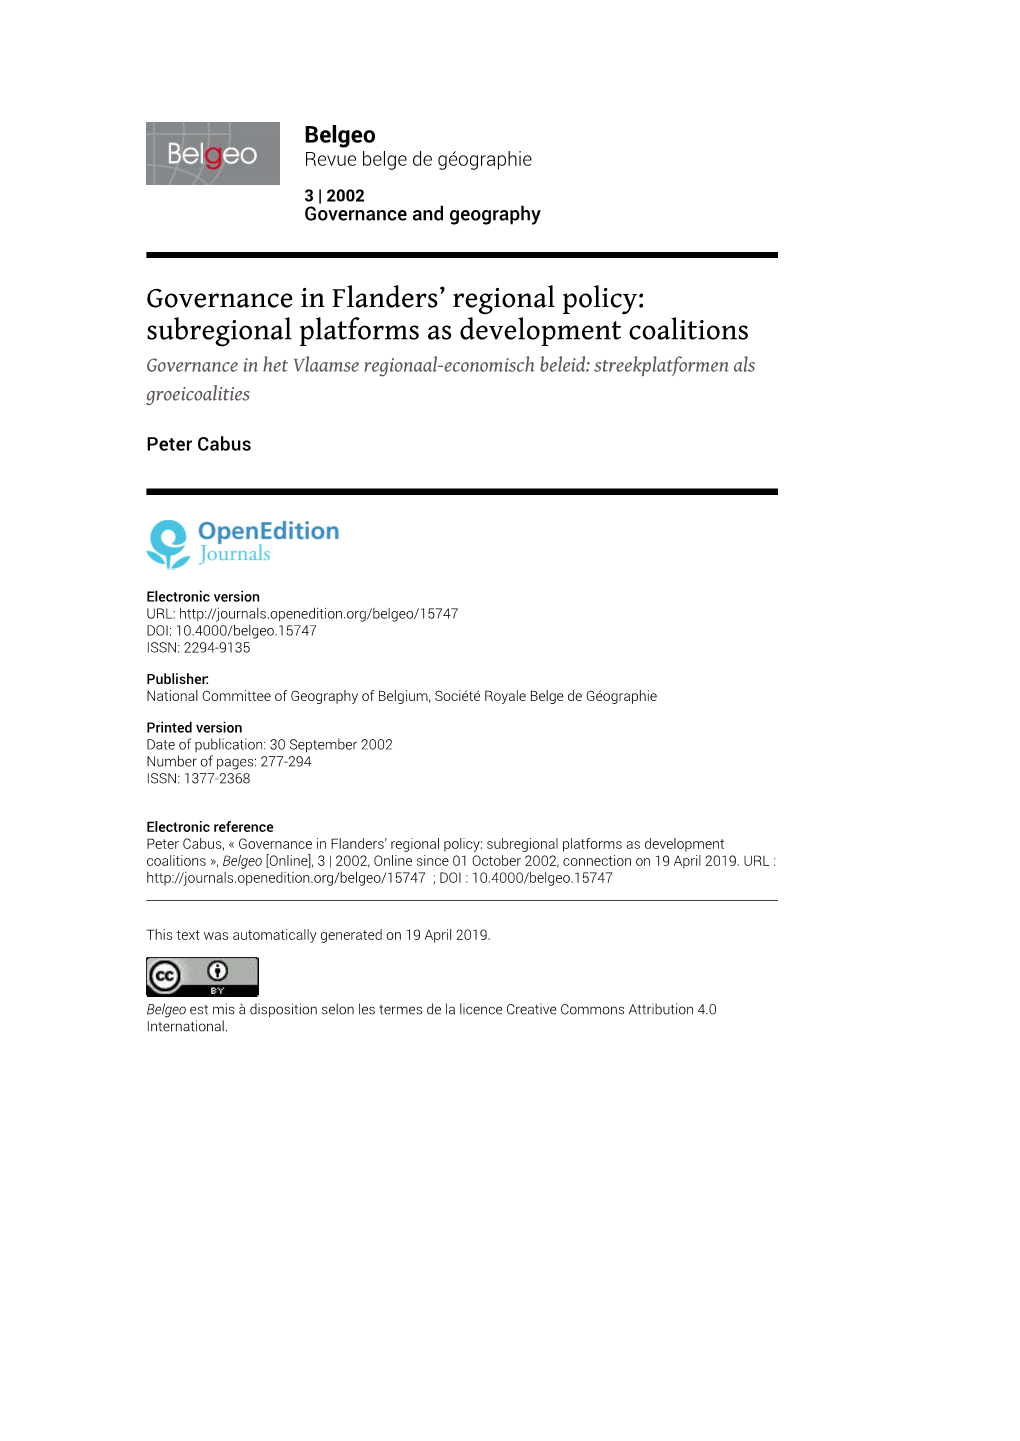 Subregional Platforms As Development Coalitions Governance in Het Vlaamse Regionaal-Economisch Beleid: Streekplatformen Als Groeicoalities